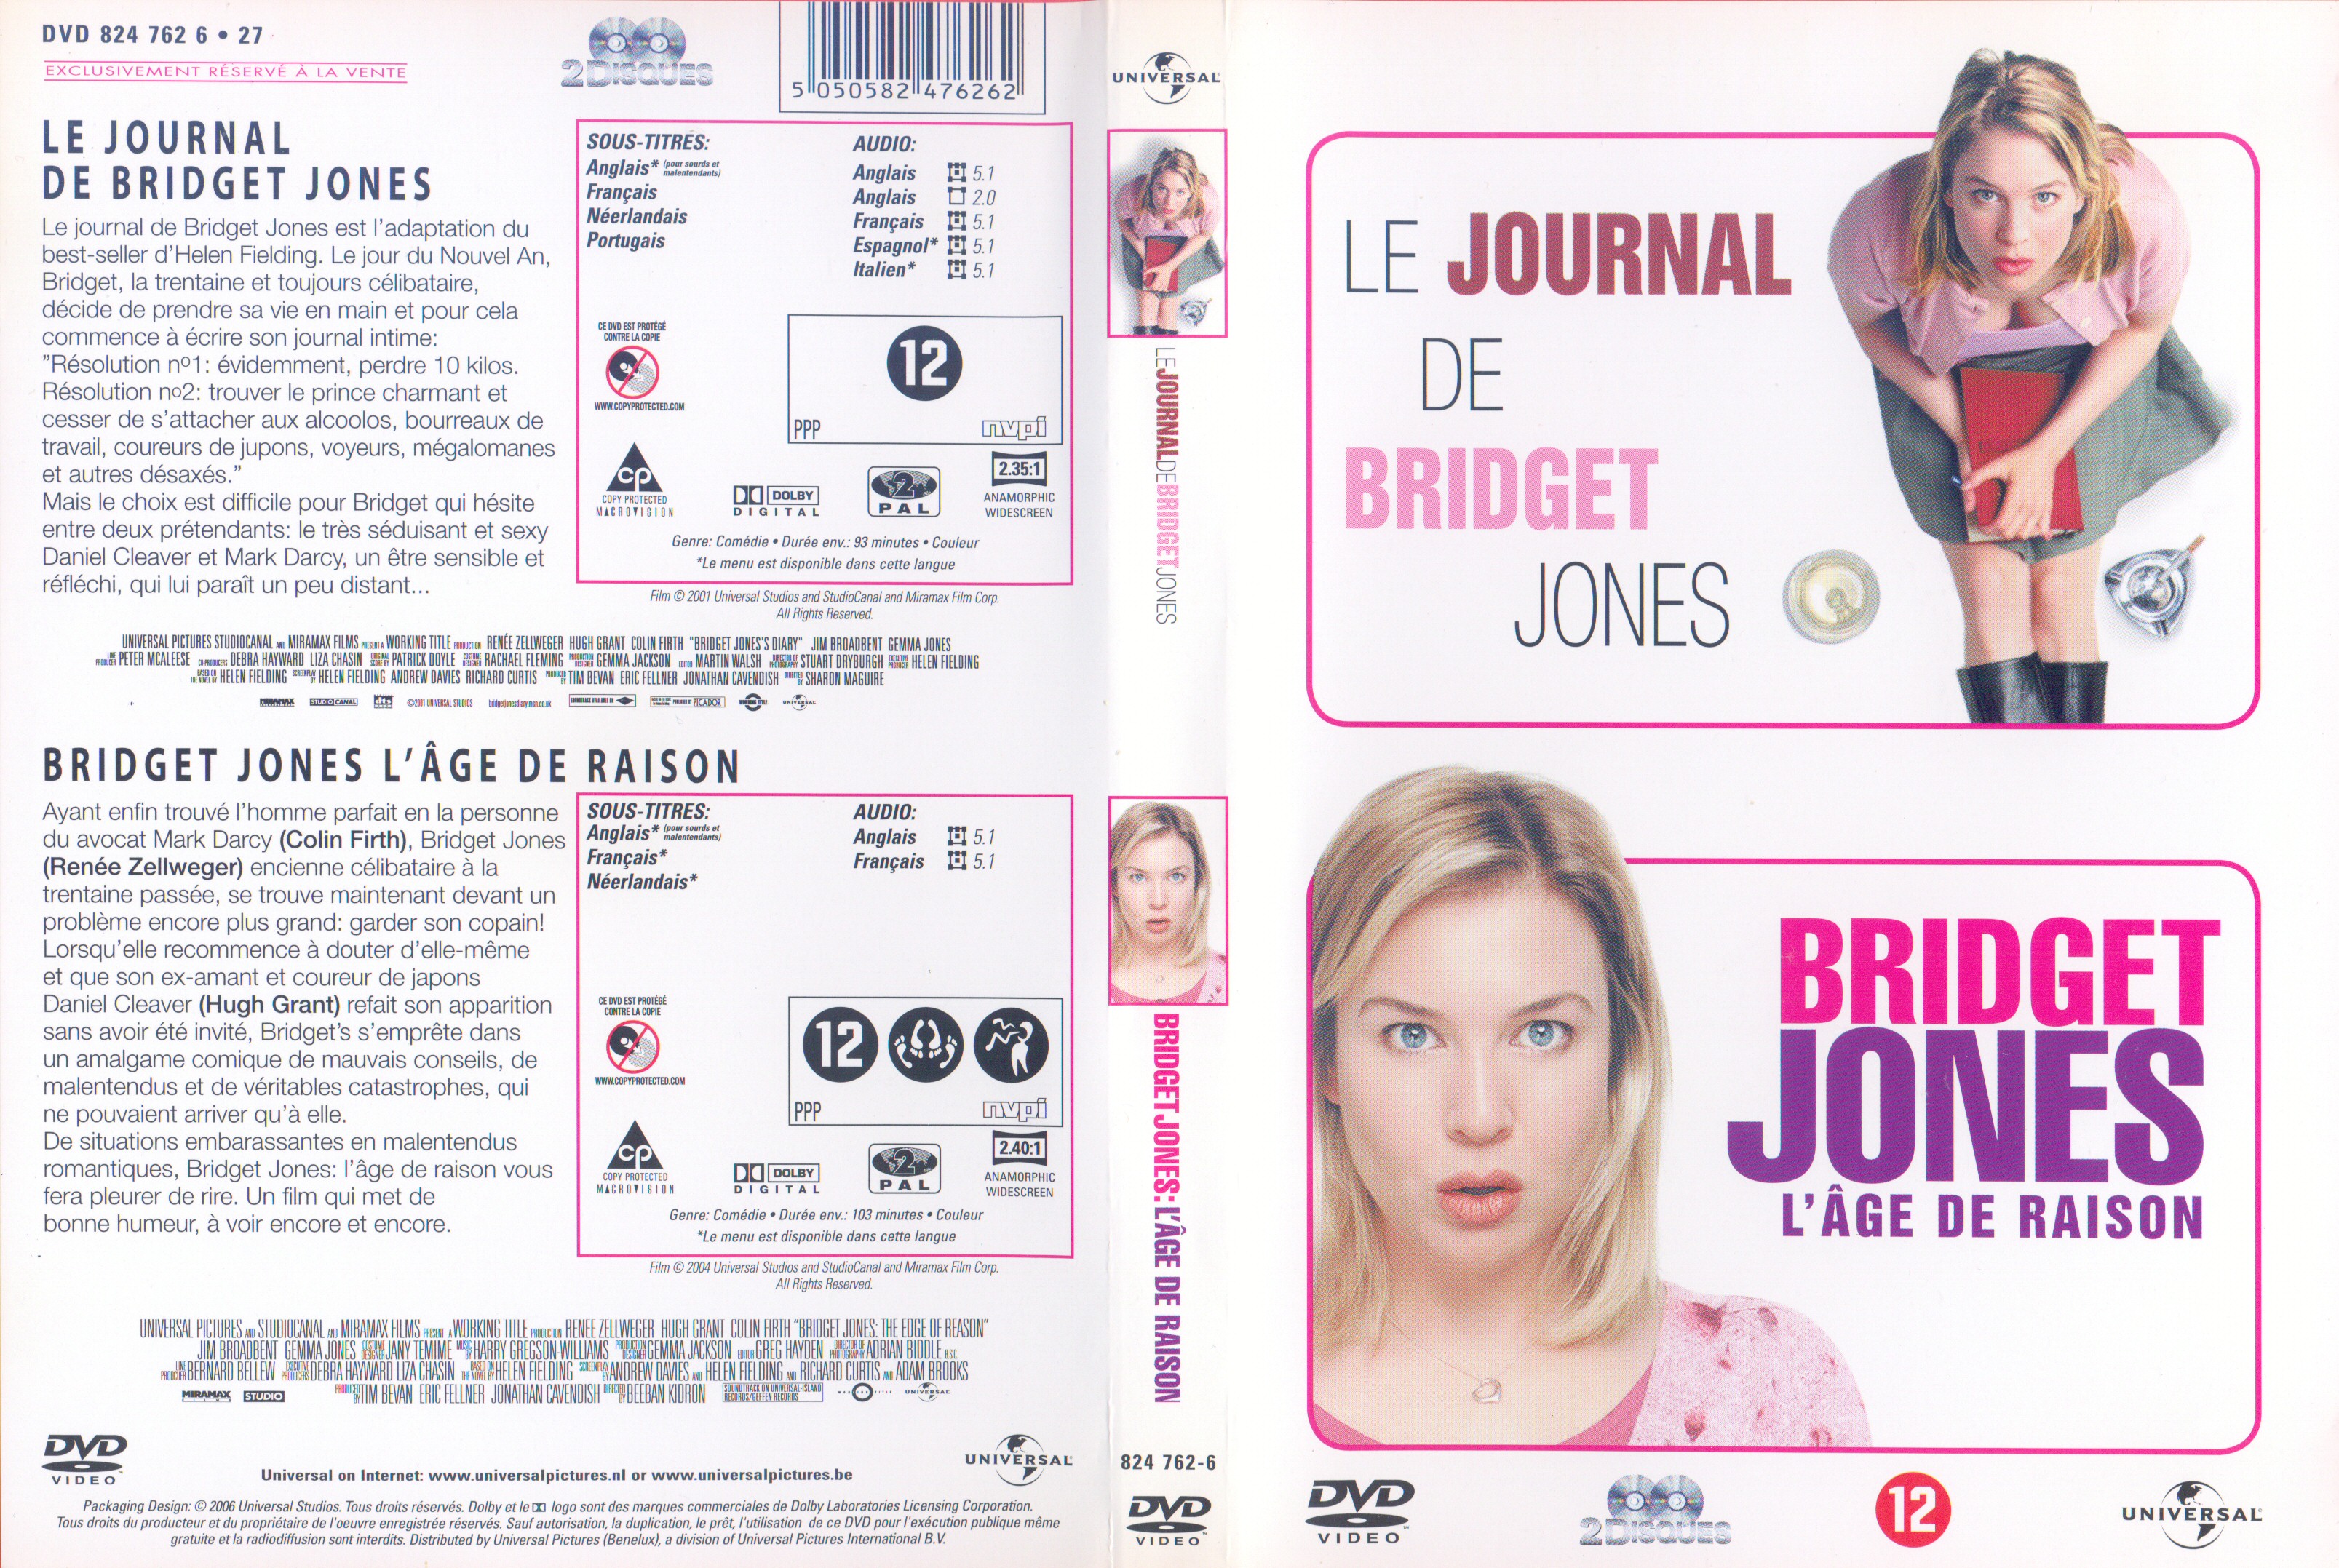 Jaquette DVD Bridget Jones 1 & 2